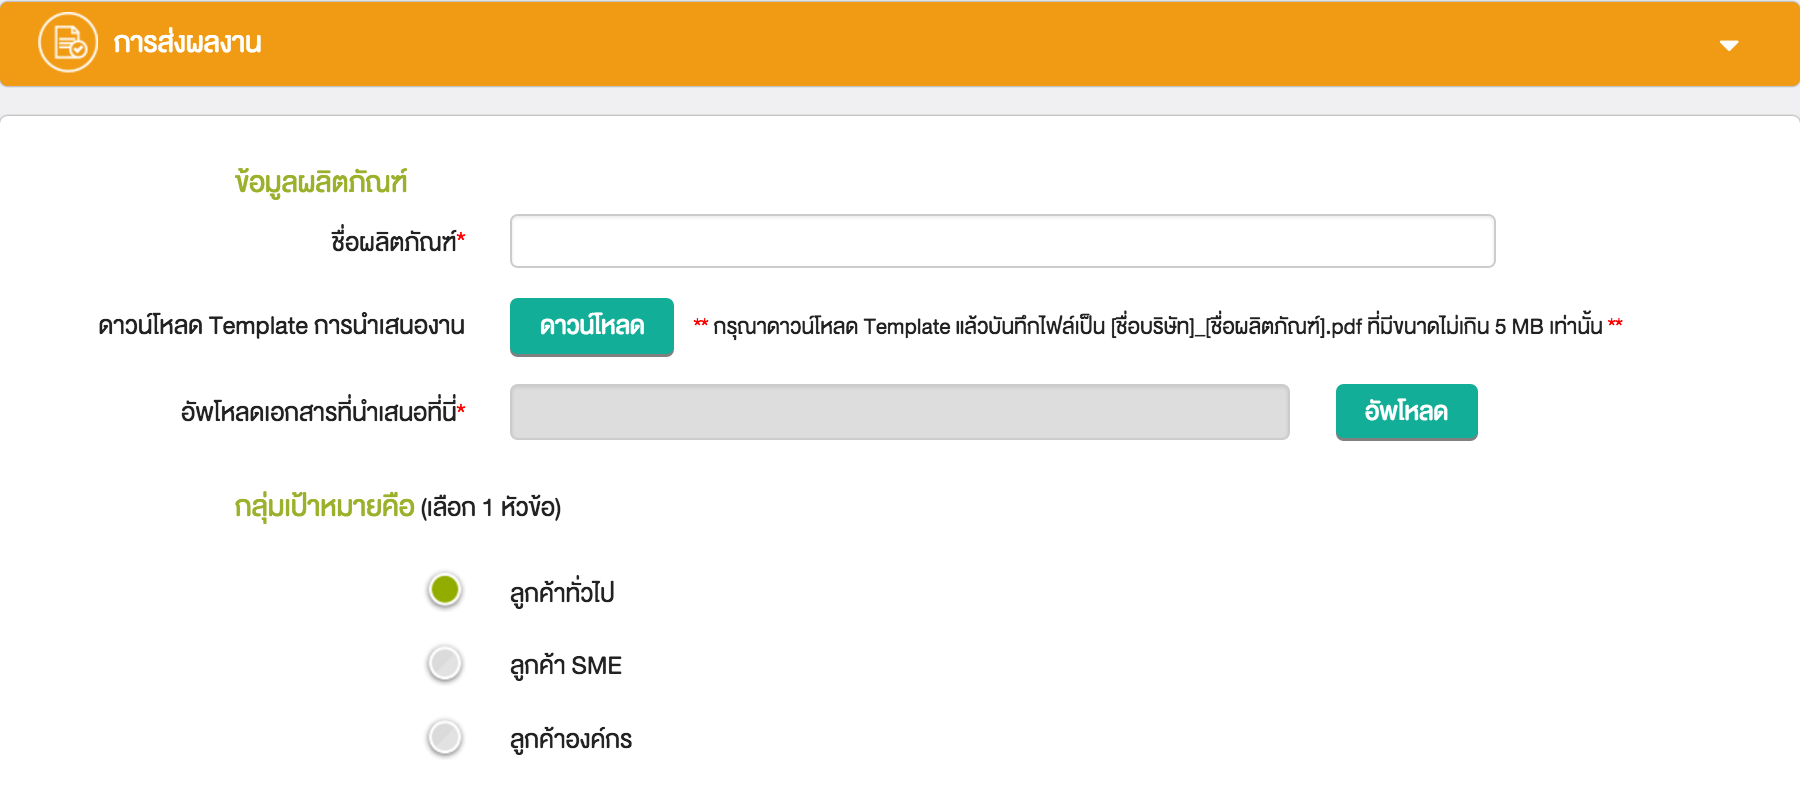 Submit ผลงานผ่านระบบออนไลน์ - Startup Thailand